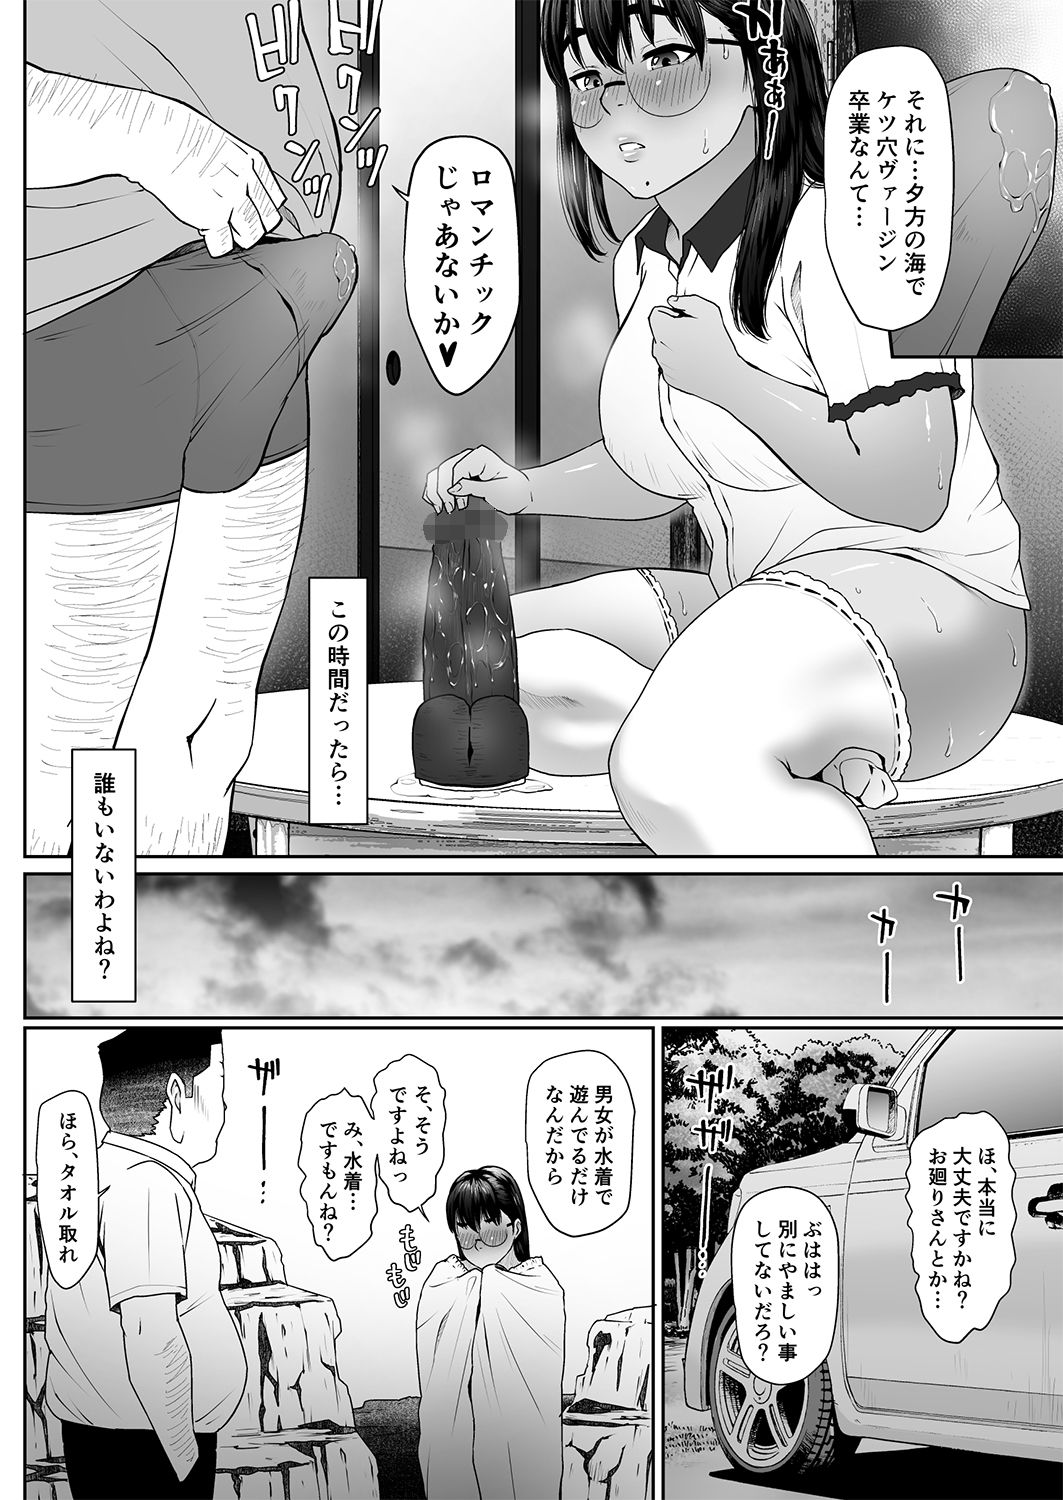 [MHO site MHO] Saru no Shiri Warai Sono 2 page 27 full